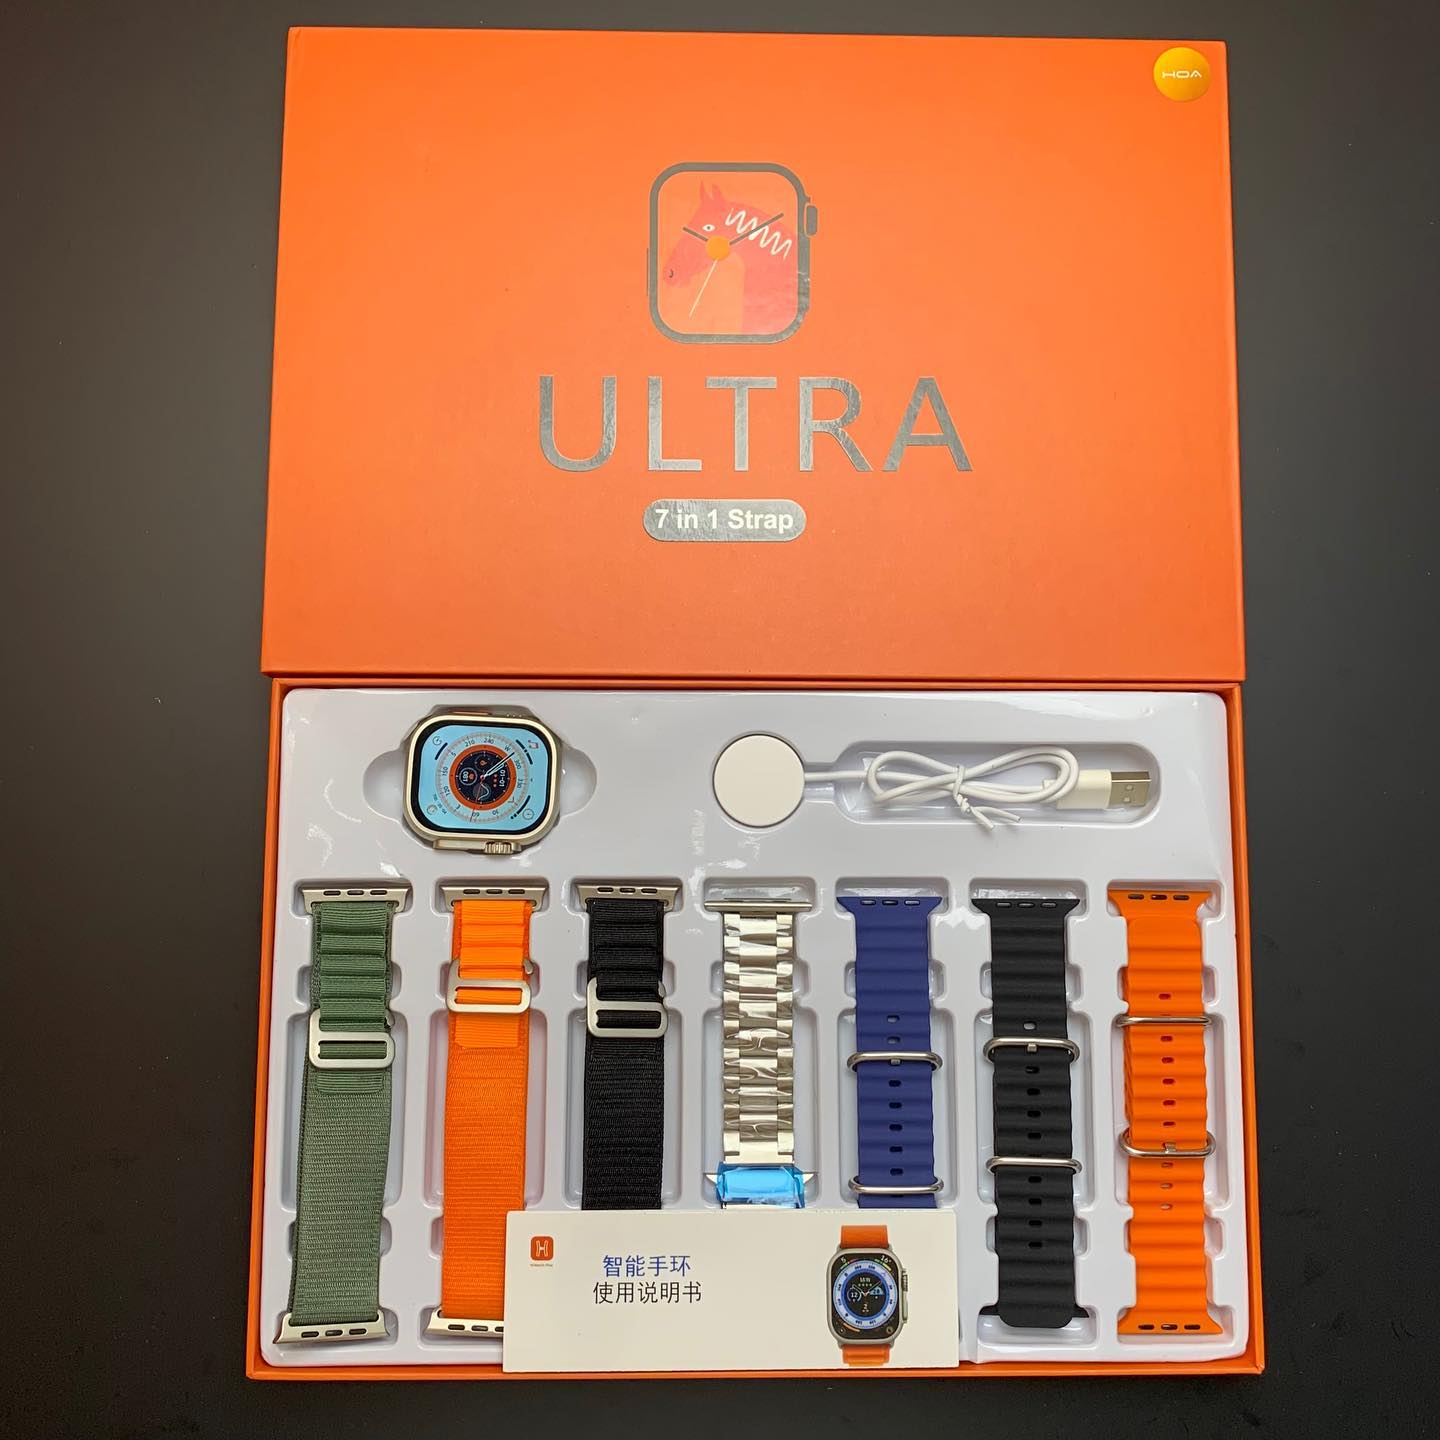 7 In 1 Ultra Smart Watch